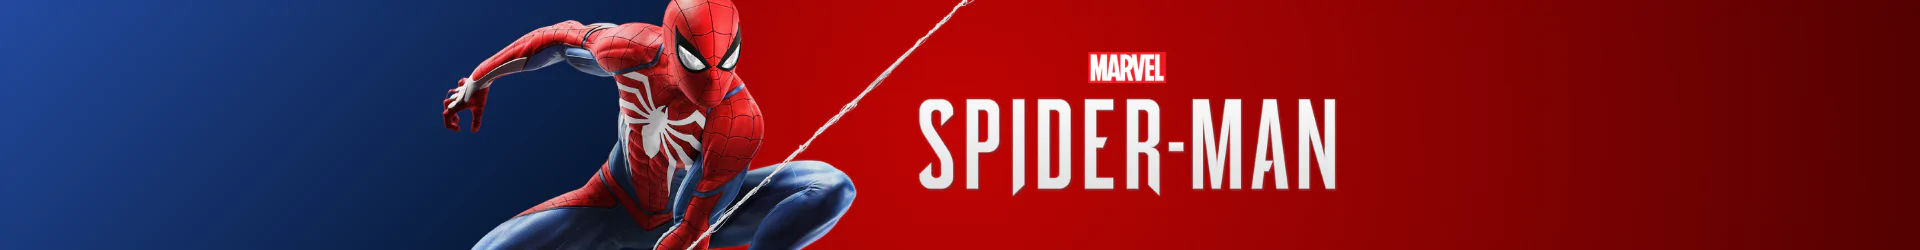 Spider-Man zubehöre banner